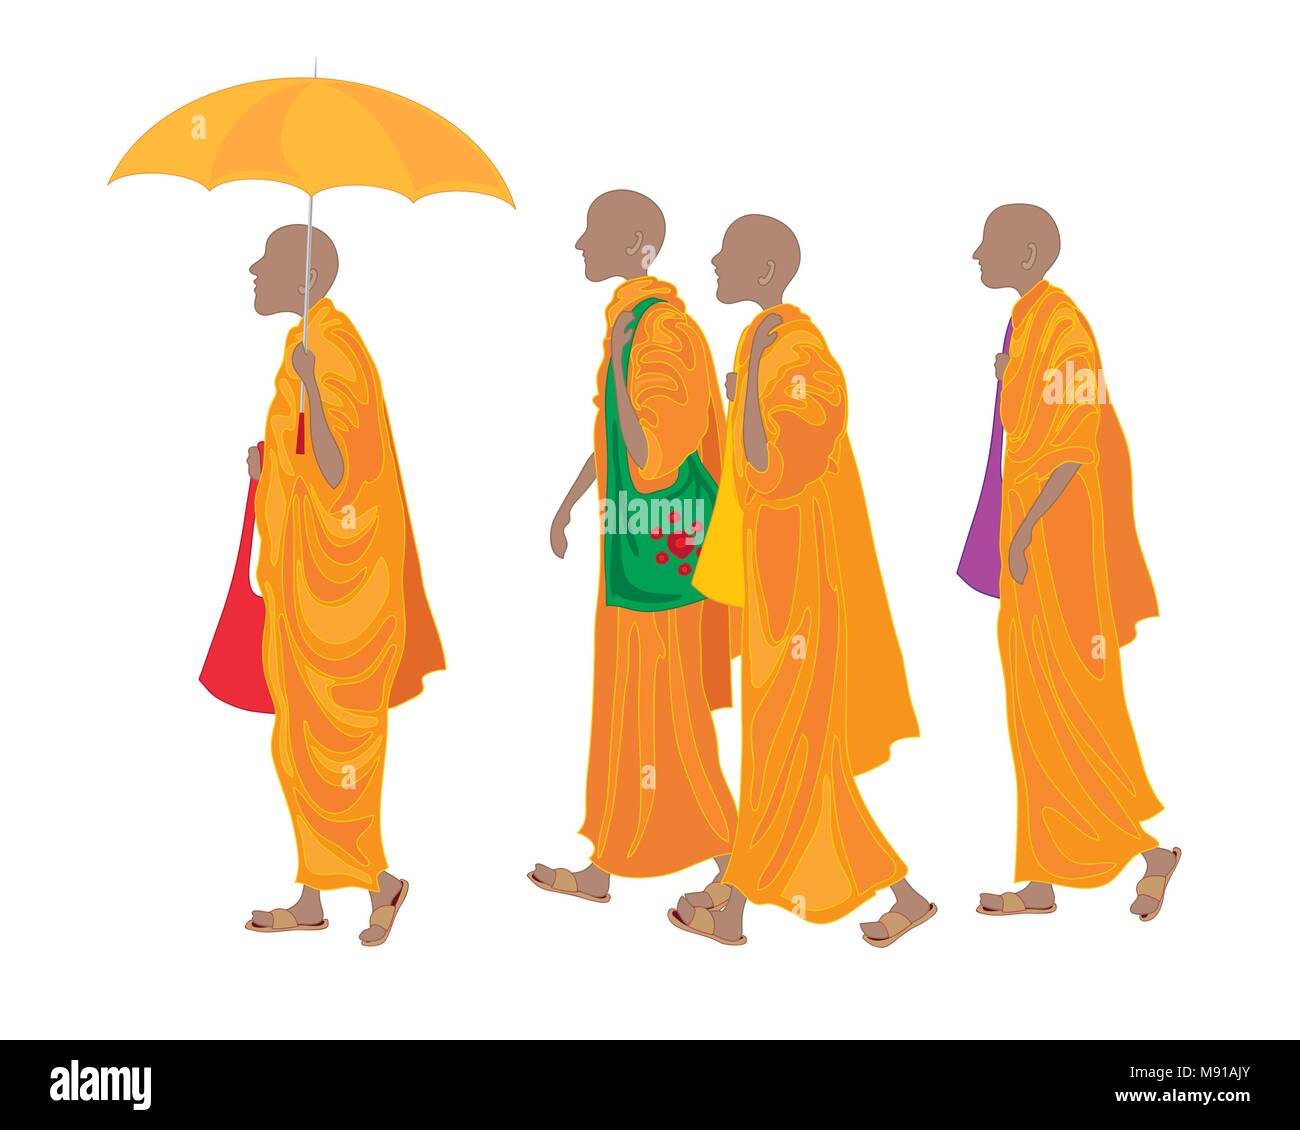 Ein Vektor Abbildung im EPS-Format einer Zeile der buddhistischen Mönche entlang, die traditionelle orangefarbene Gewänder Stock Vektor